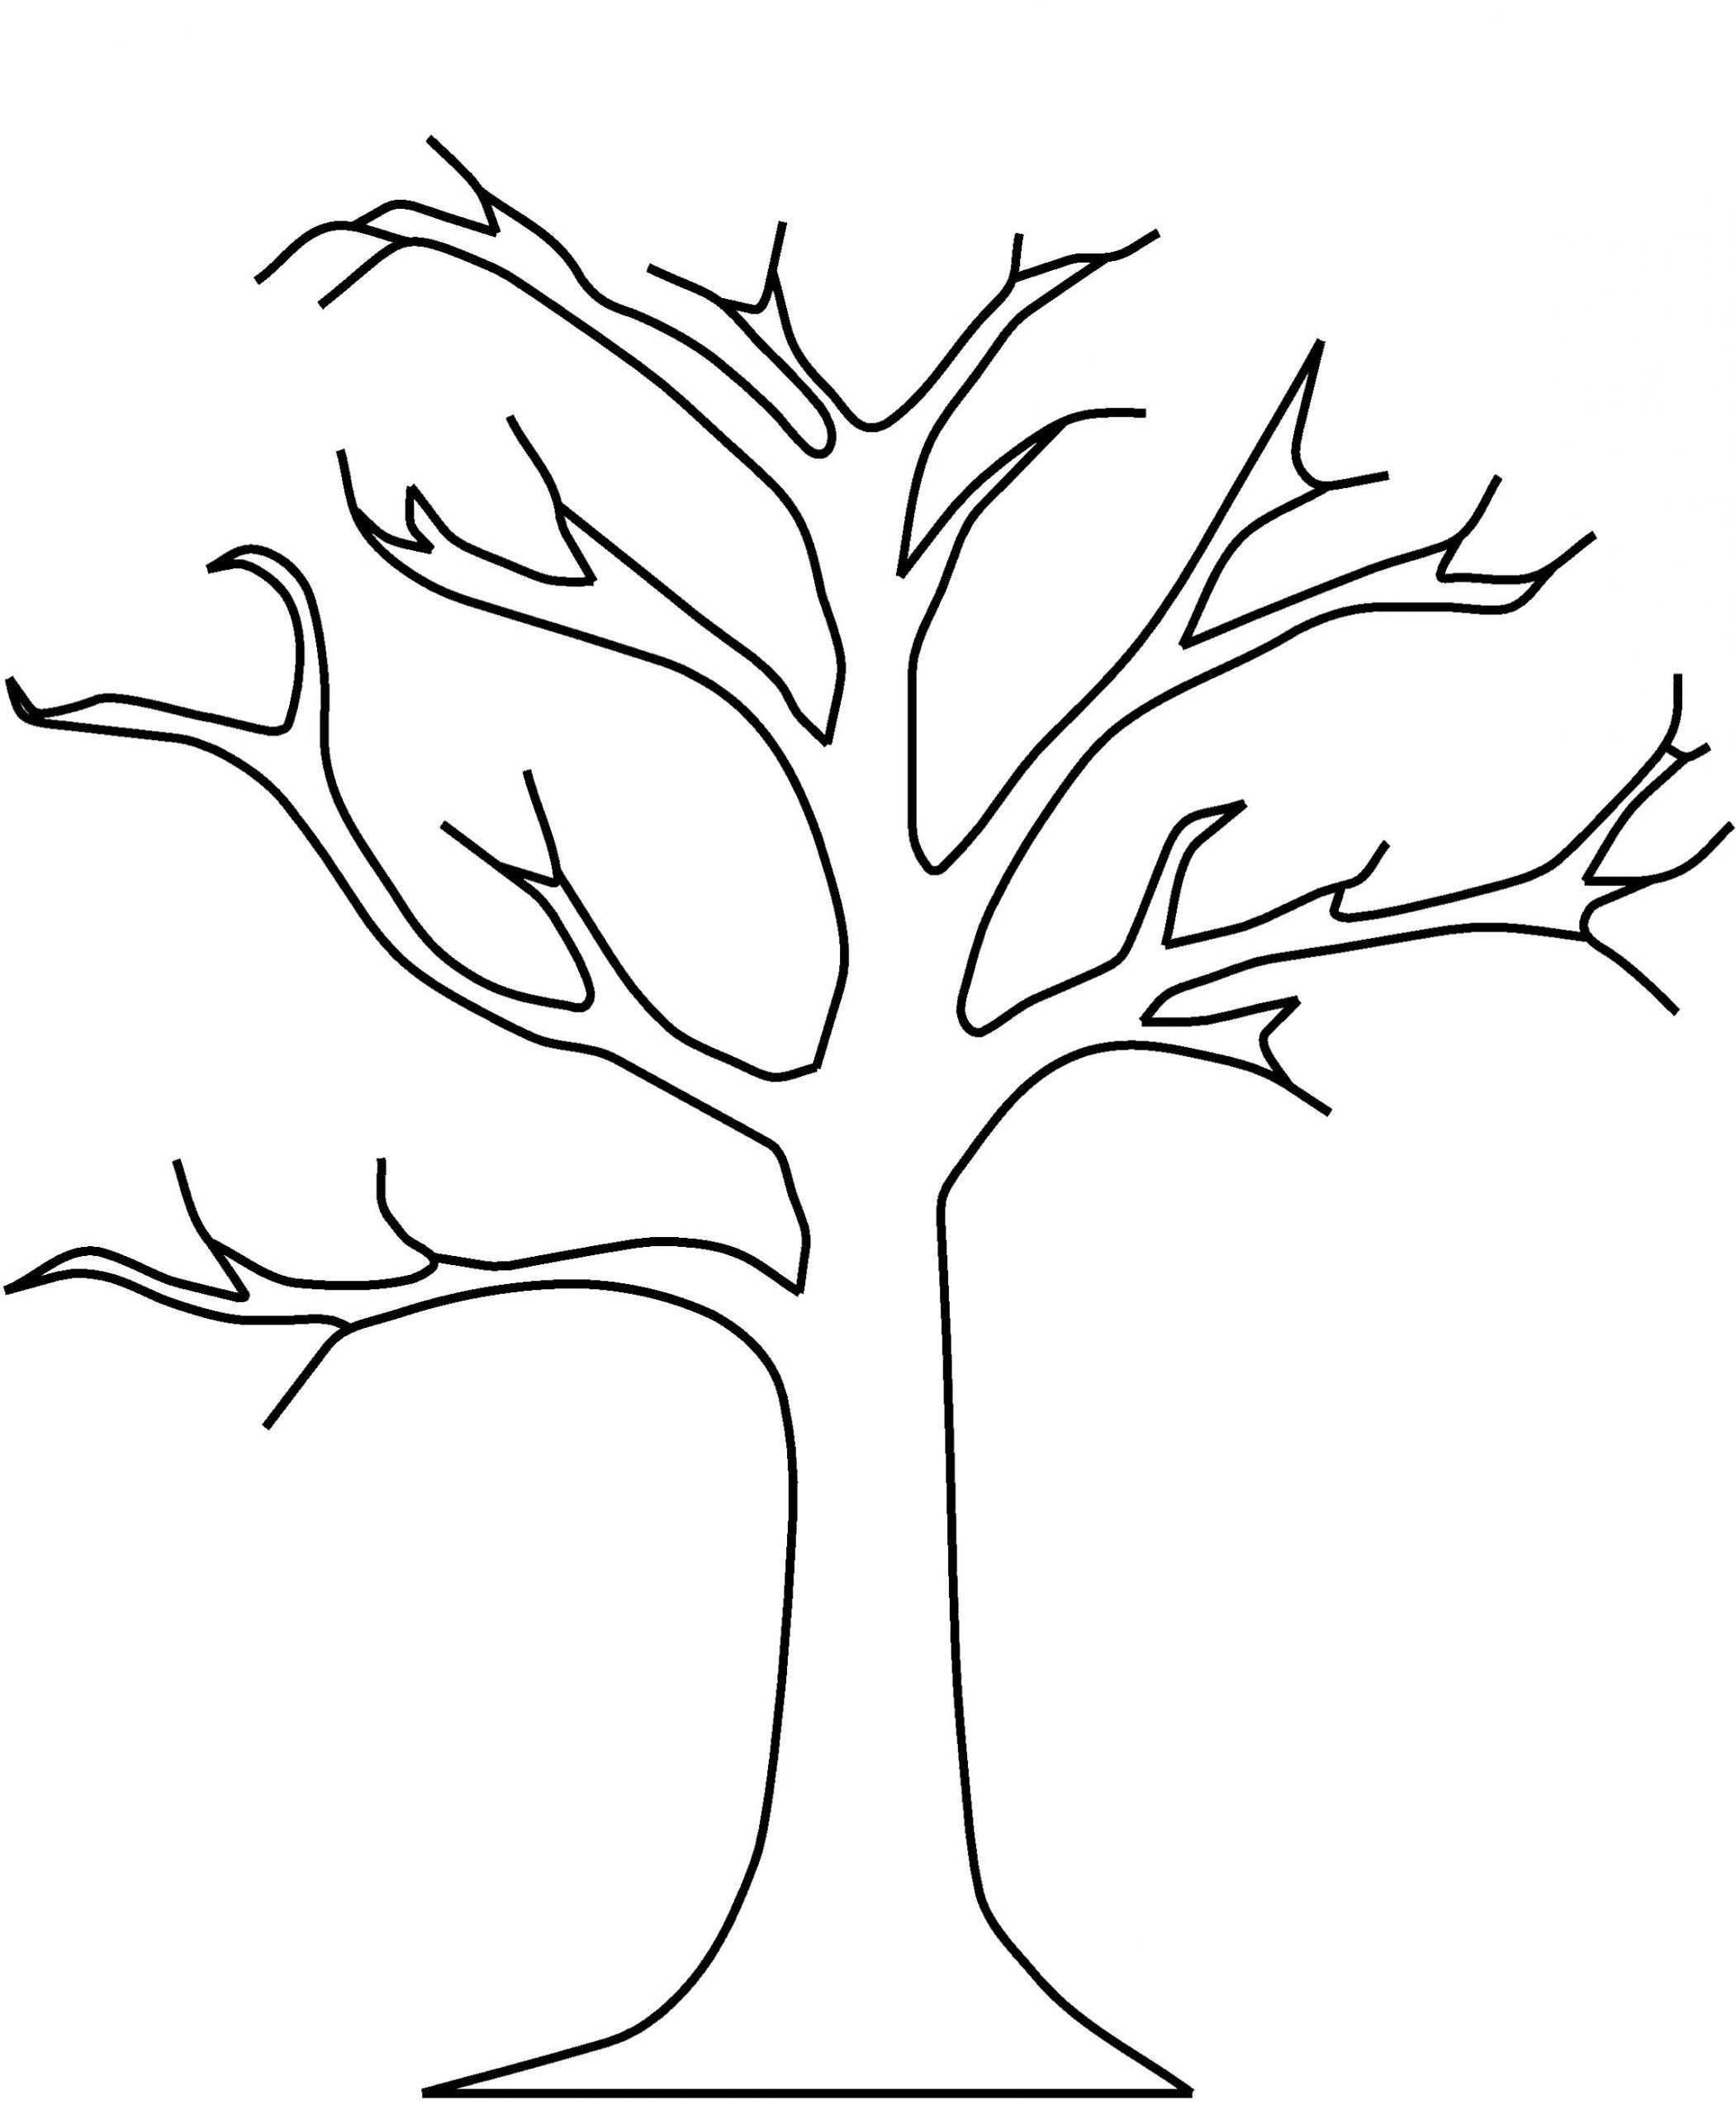 Apple Tree Without Leaves Coloring Pages Baum Umriss In 2020 Baum Vorlage Blattschablone Malvorlagen